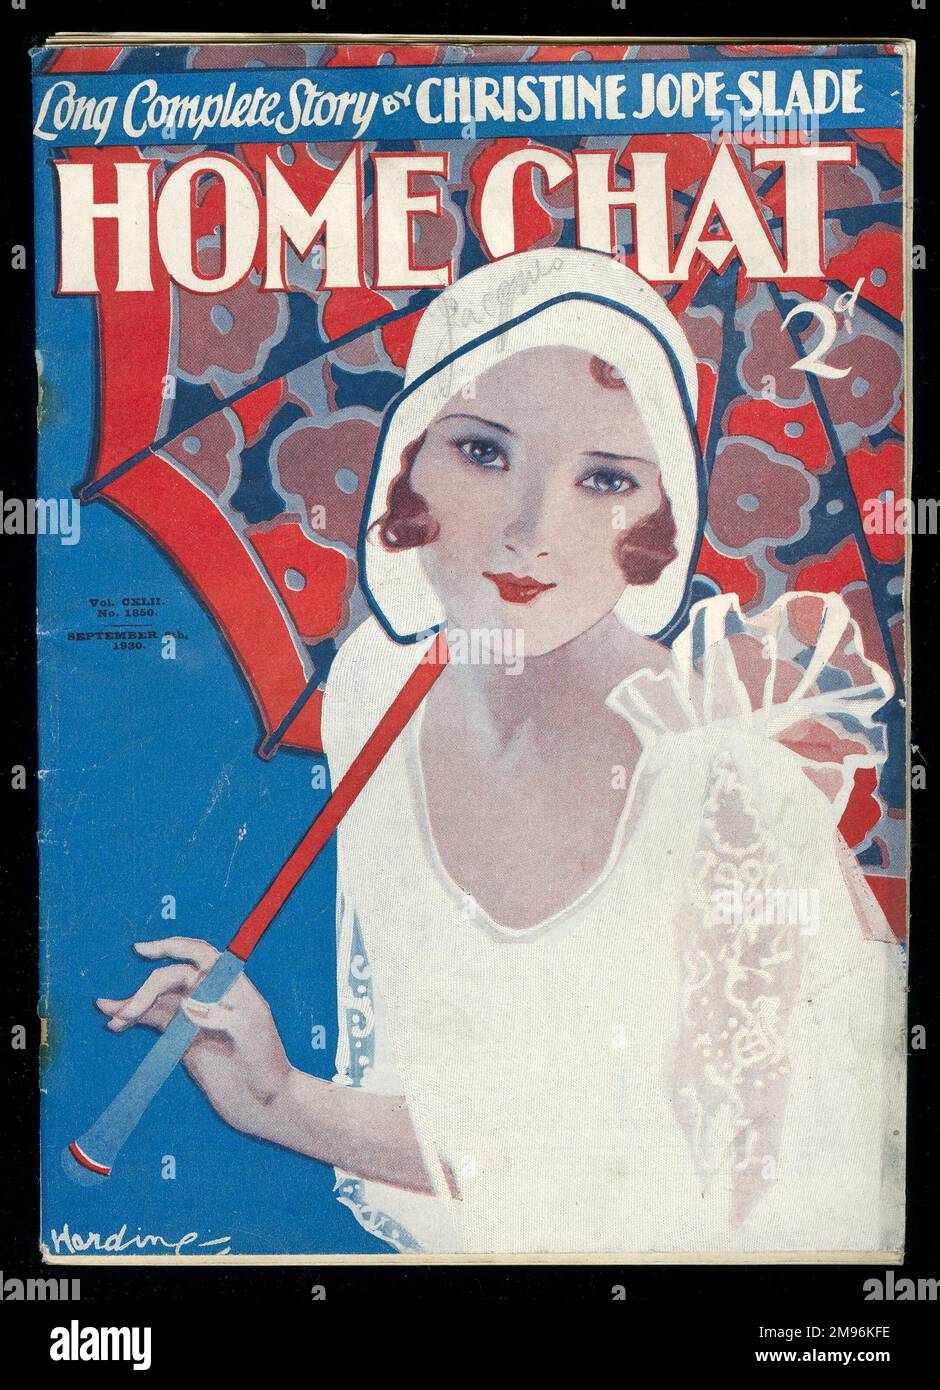 Titelseite des Magazins „Home Chat“, das eine junge Frau in einem weißen Kleid und Hut mit einem bunt gemusterten Regenschirm zeigt. Das Magazin enthält eine komplette Geschichte von Christine Jope-Slade. Stockfoto